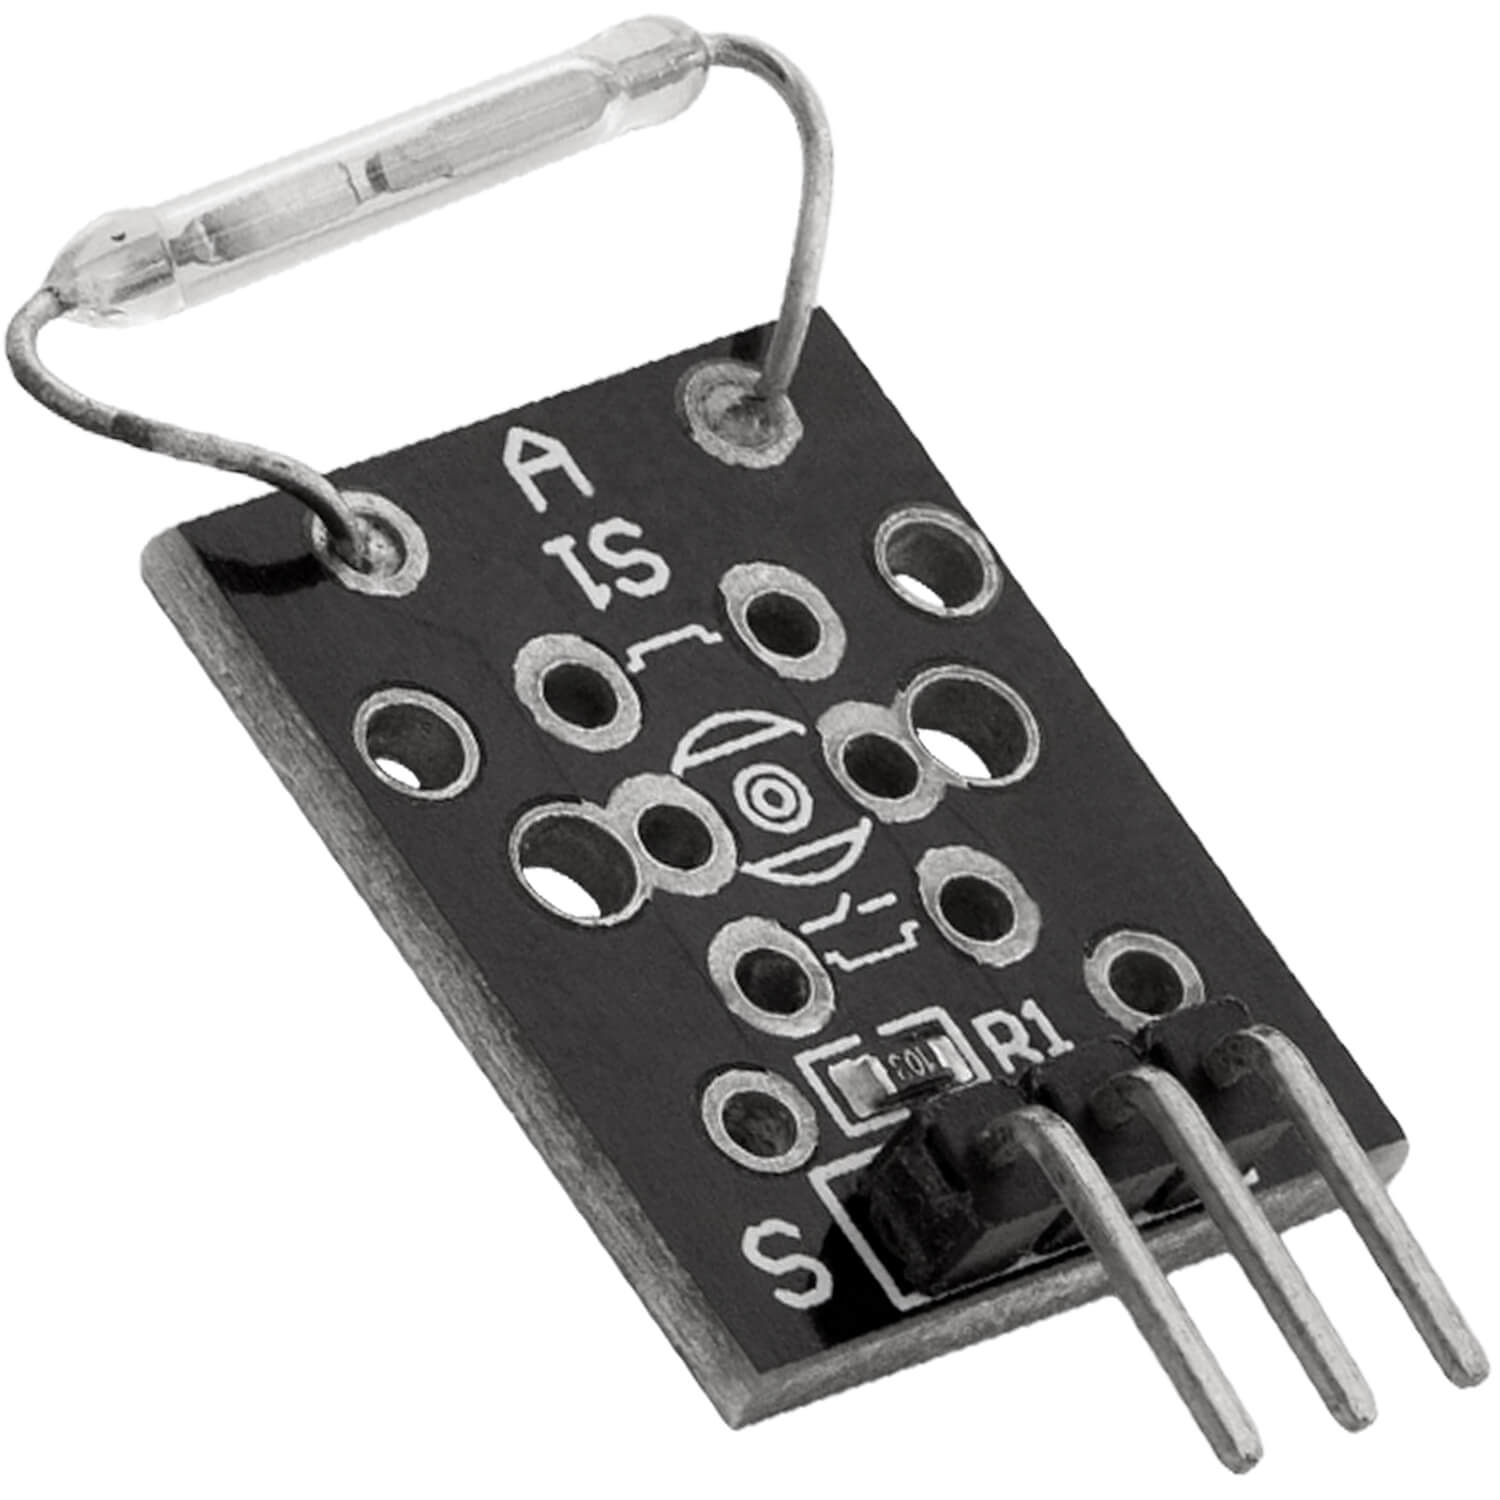 Module Capteur Magnétique pour Arduino KY-021